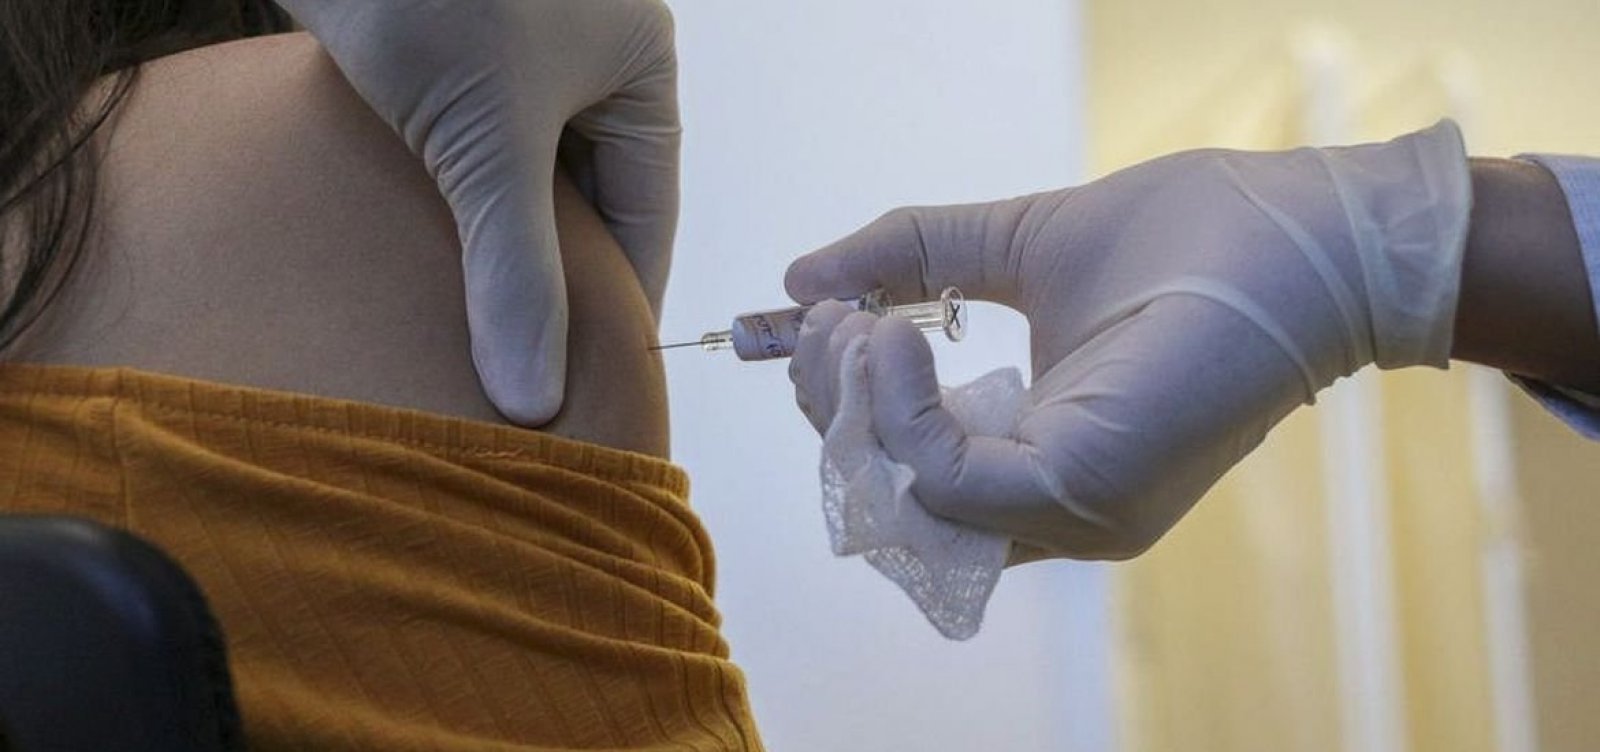 [Ministério da Saúde vai distribuir 11,2 milhões de vacinas contra Covid-19 aos estados]